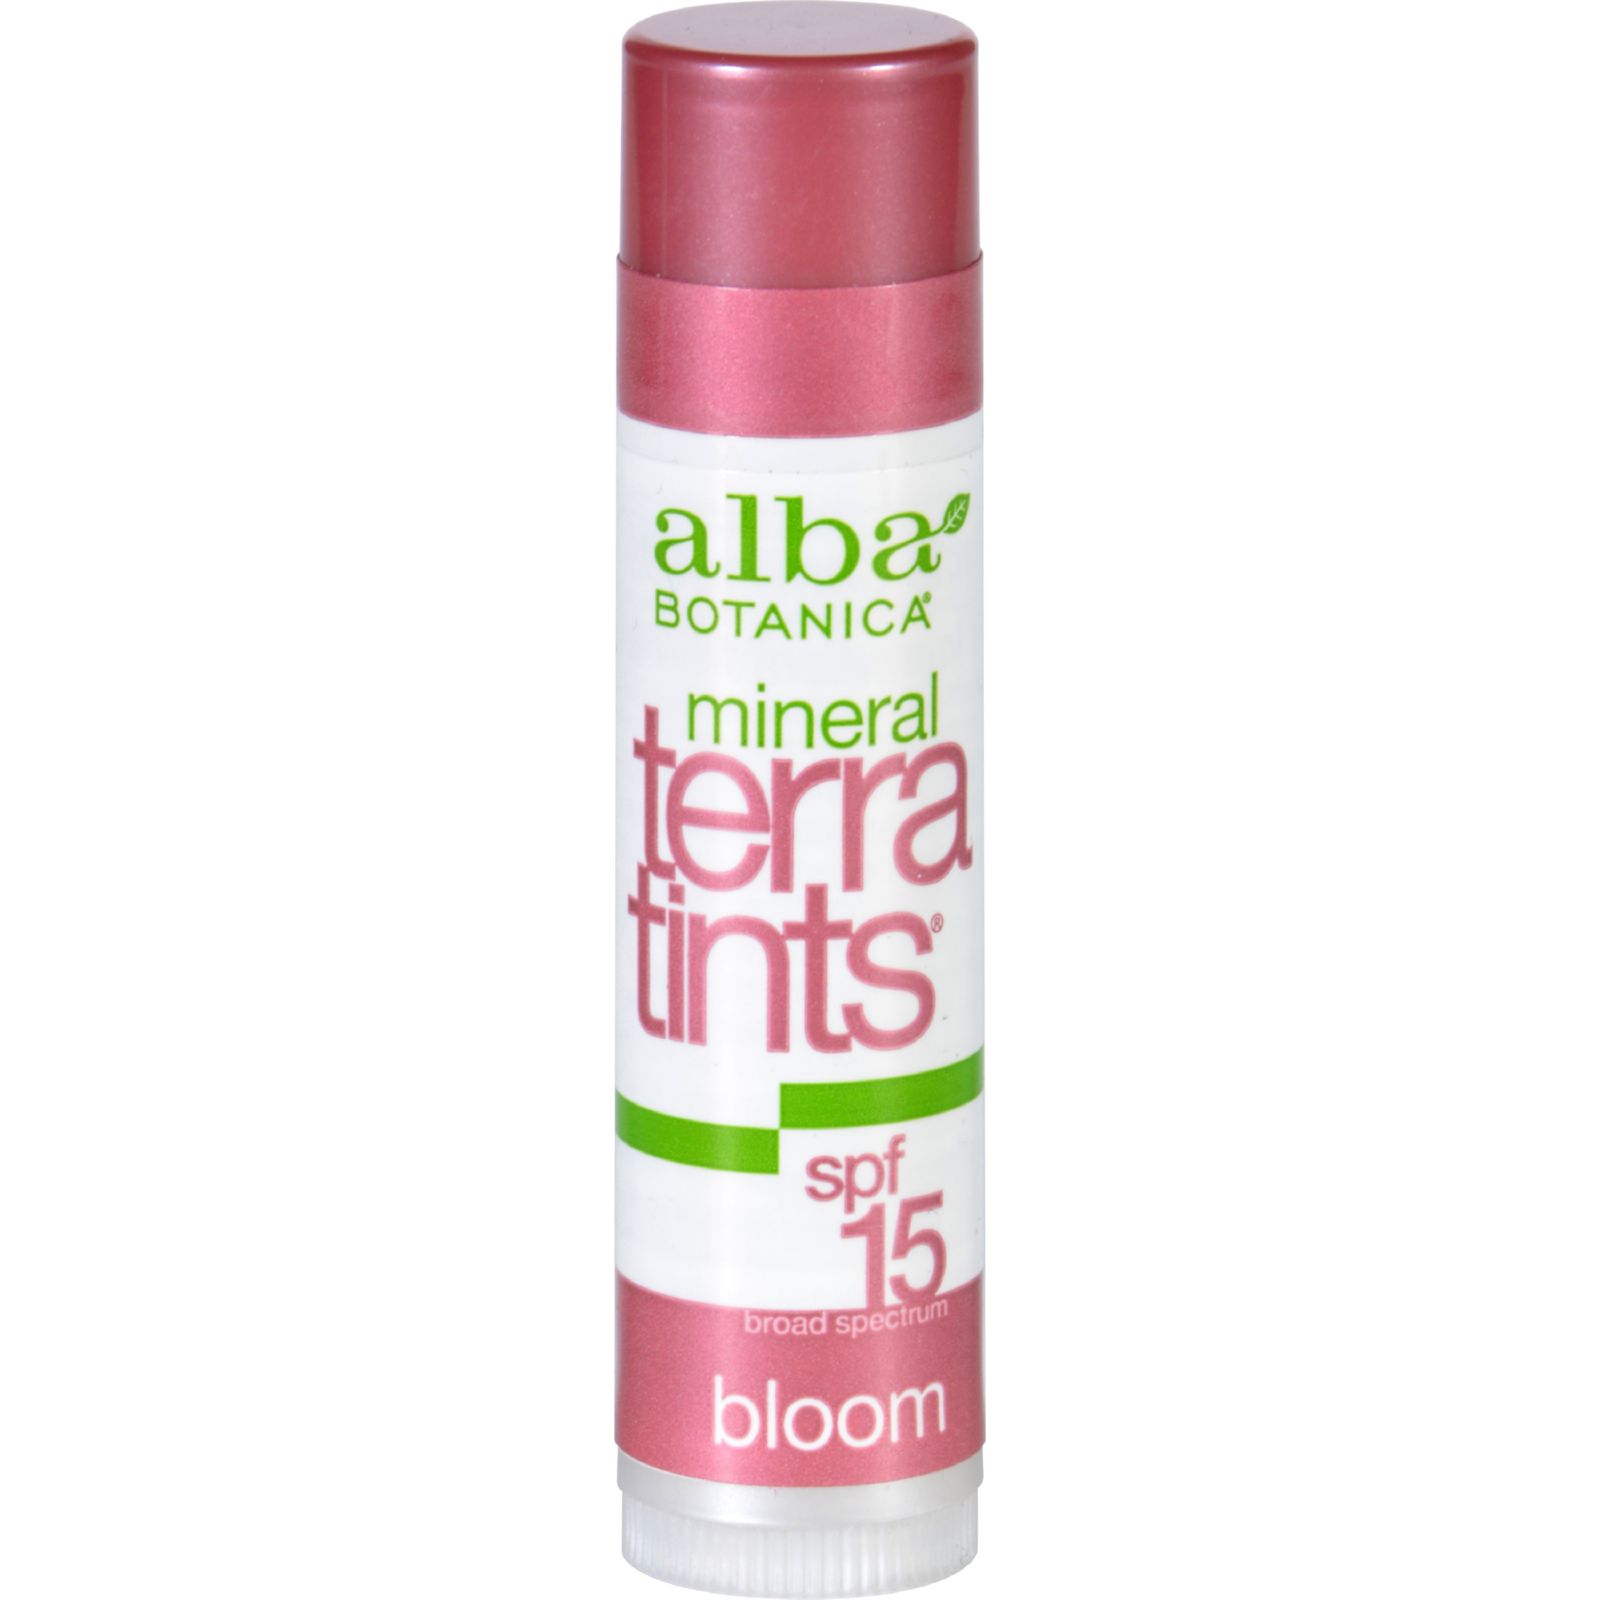 알바 보타니카, 테라 틴트 립밤 SPF 15, Bloom, 0.15 oz (4.2 g)